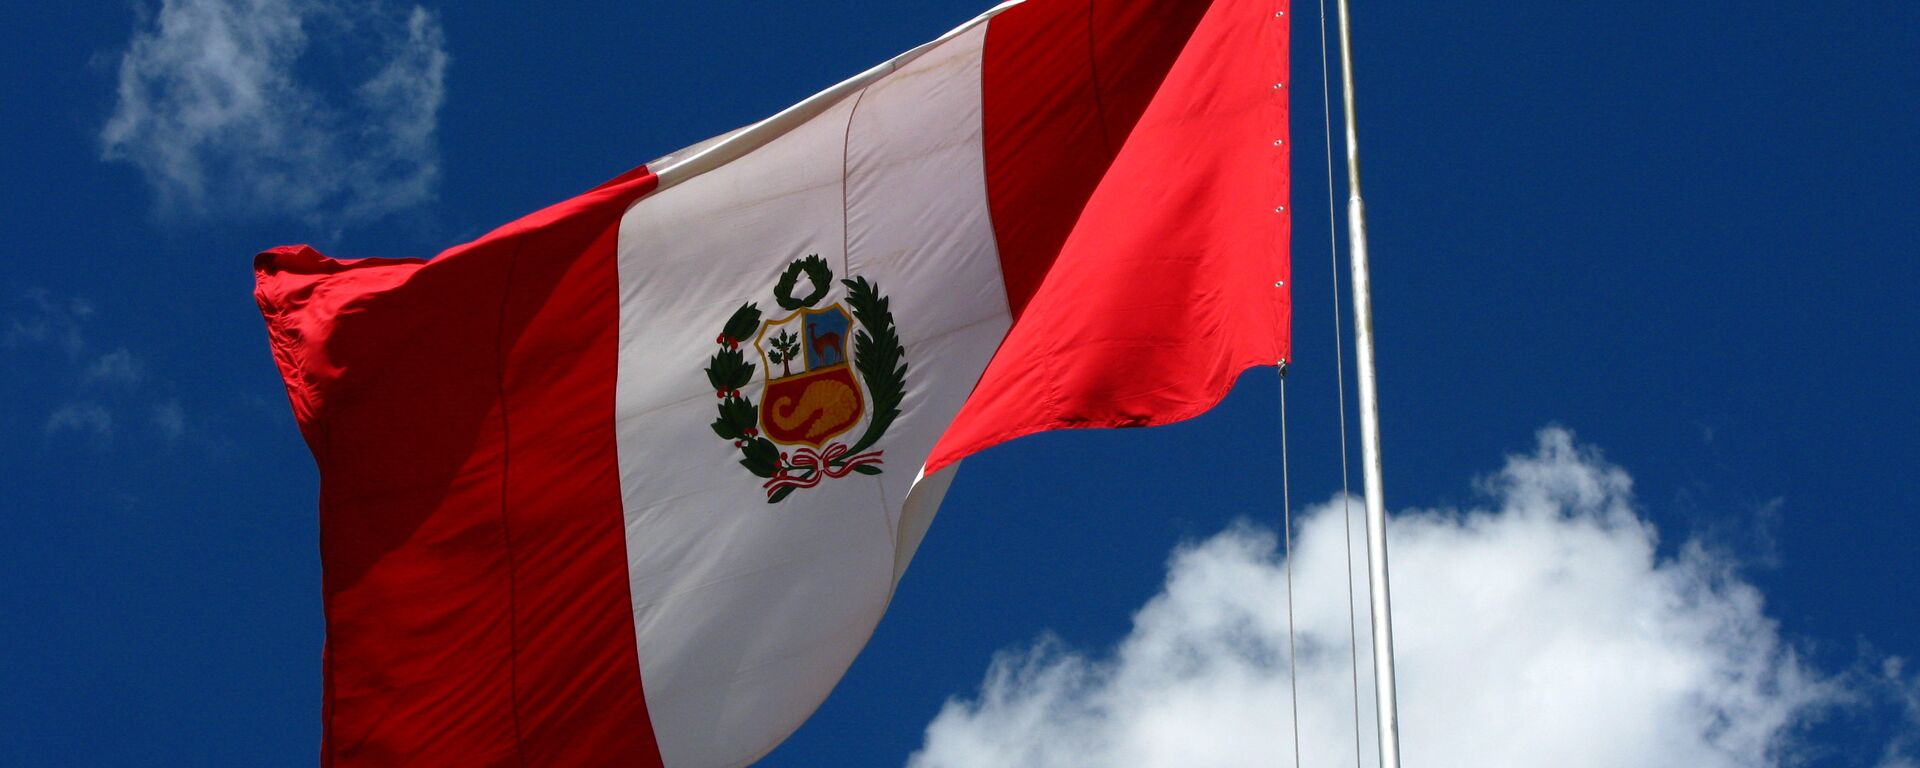 Bandera del Perú - Sputnik Mundo, 1920, 25.05.2021